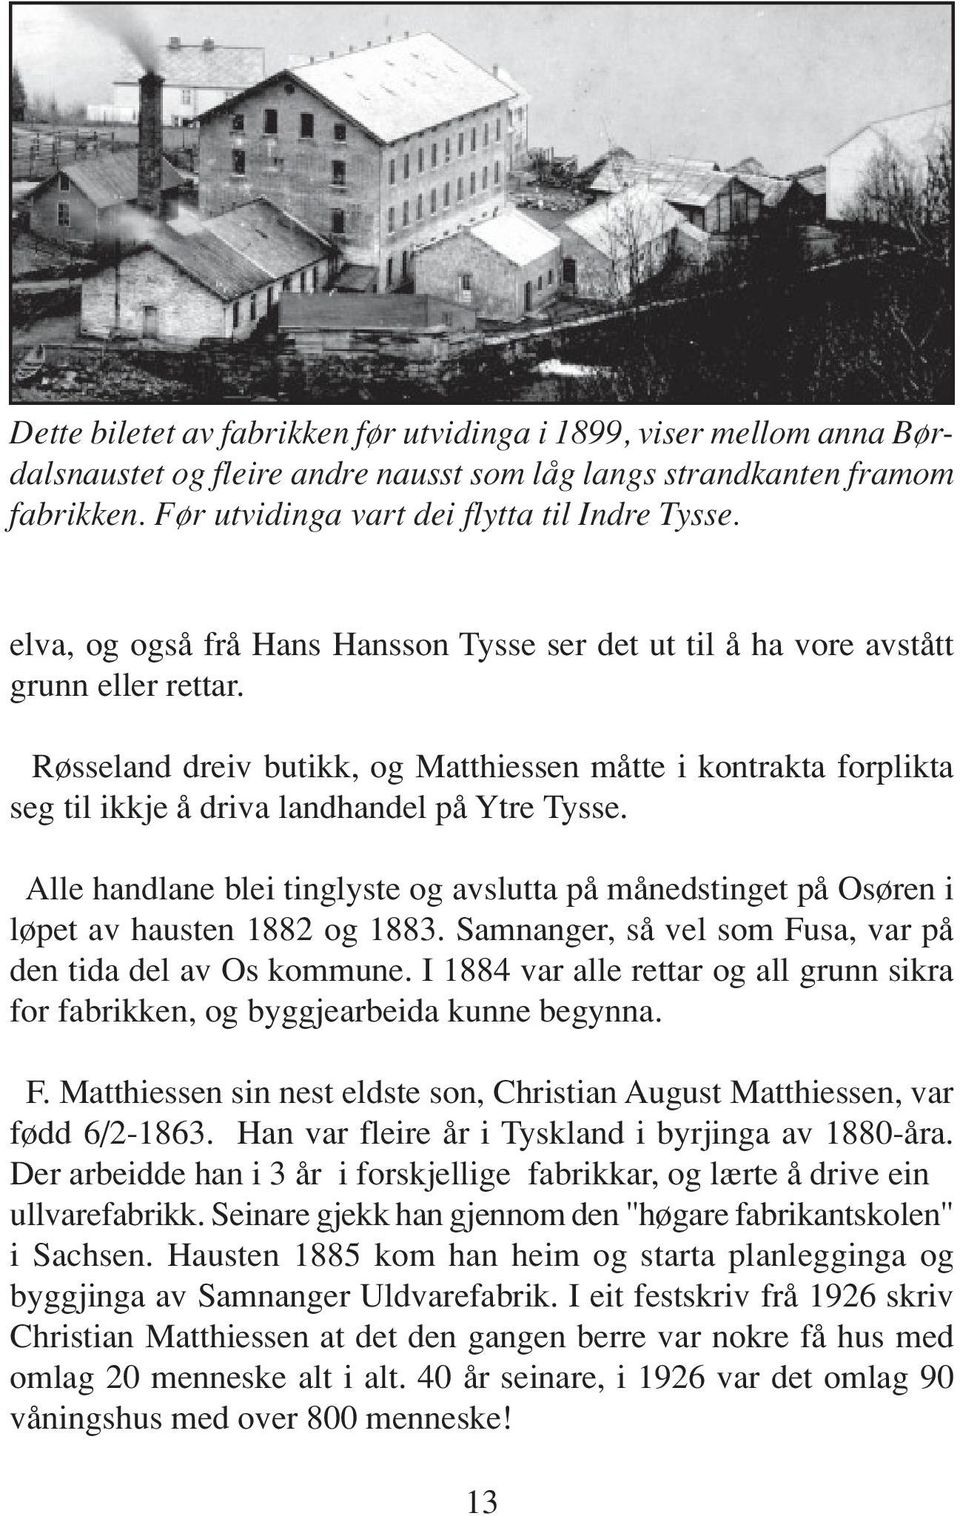 Røsseland dreiv butikk, og Matthiessen måtte i kontrakta forplikta seg til ikkje å driva landhandel på Ytre Tysse.